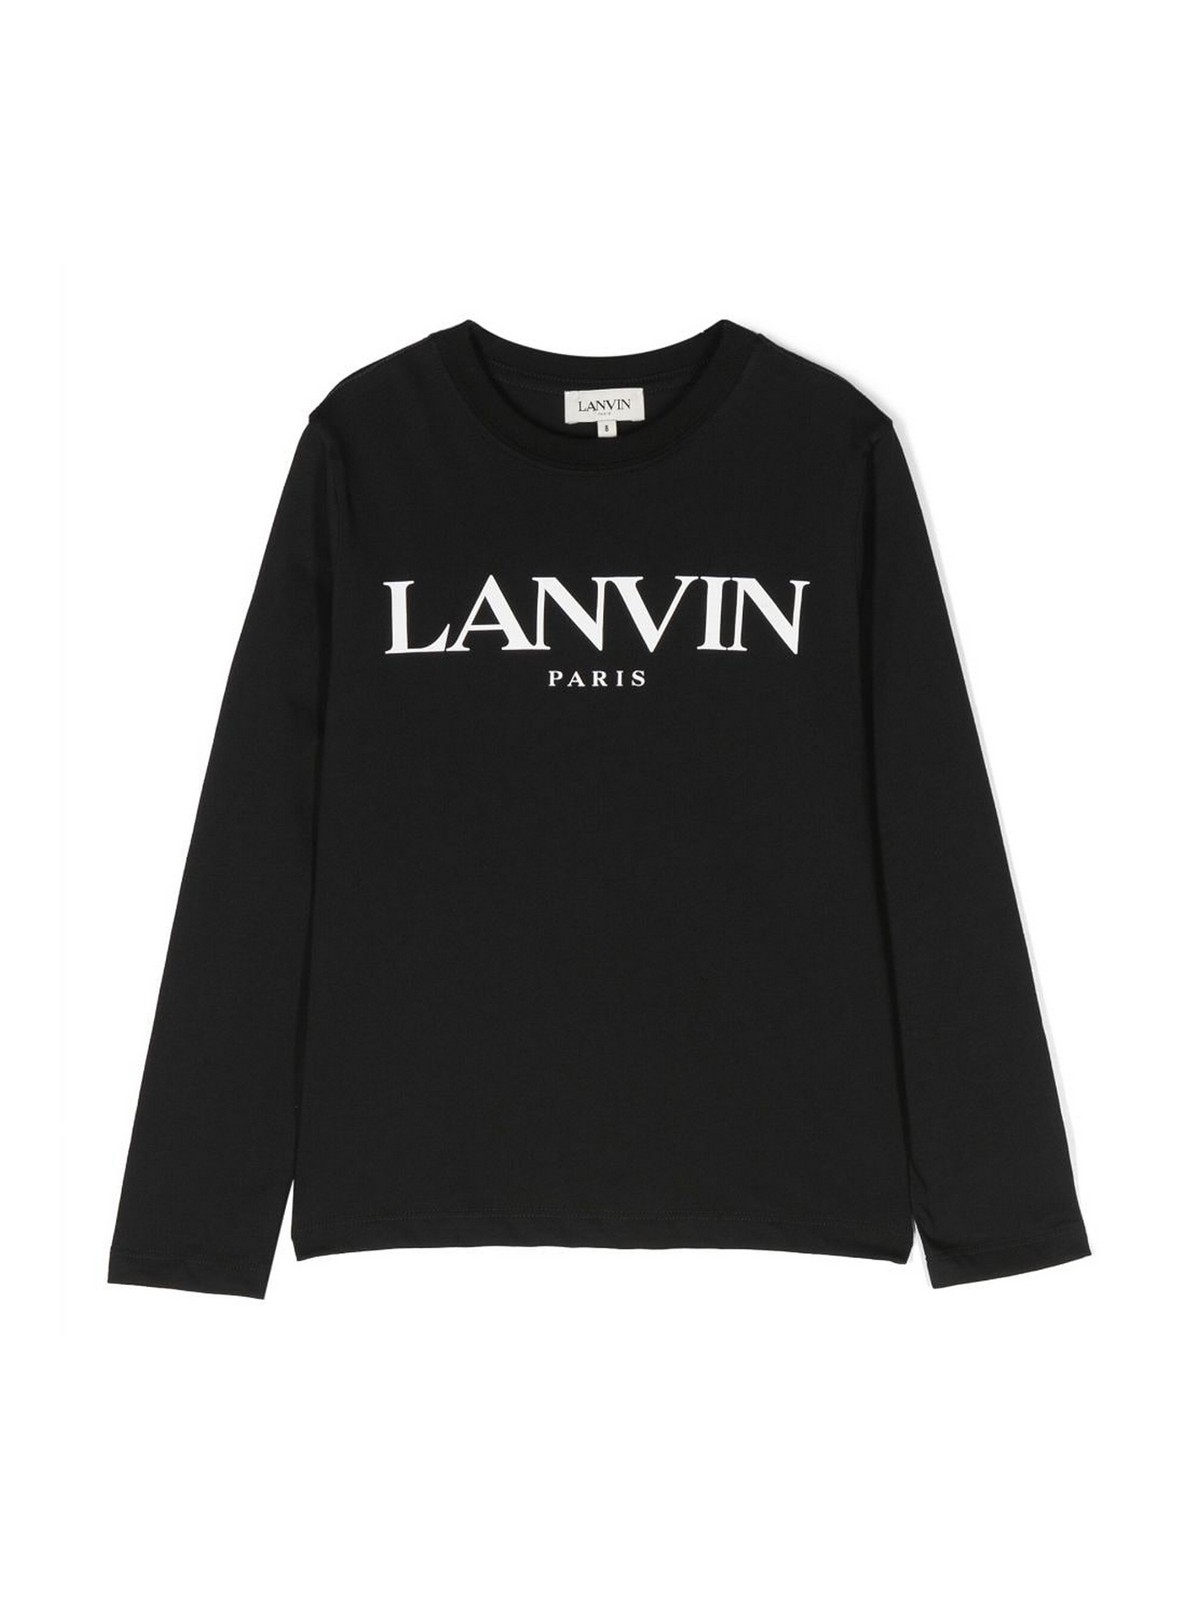 Lanvin Kids' Black Cotton Jersey Boy  T-shirt